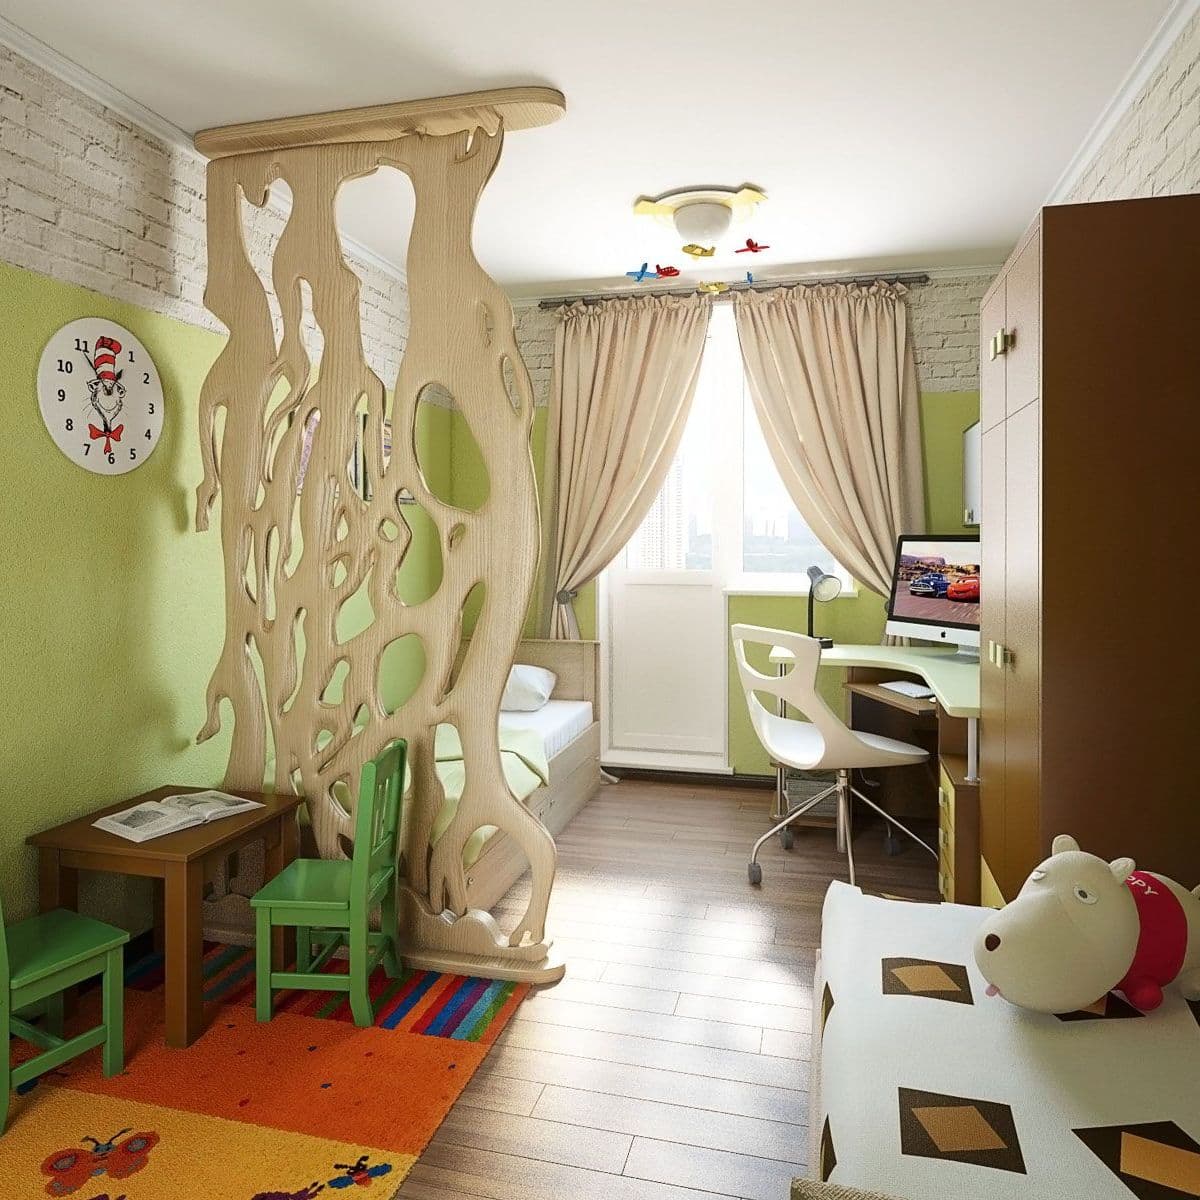 Интерьер детской для двух мальчиков с декоративной перегородкой, рабочим местом, игровой зоной, в зеленом цвете